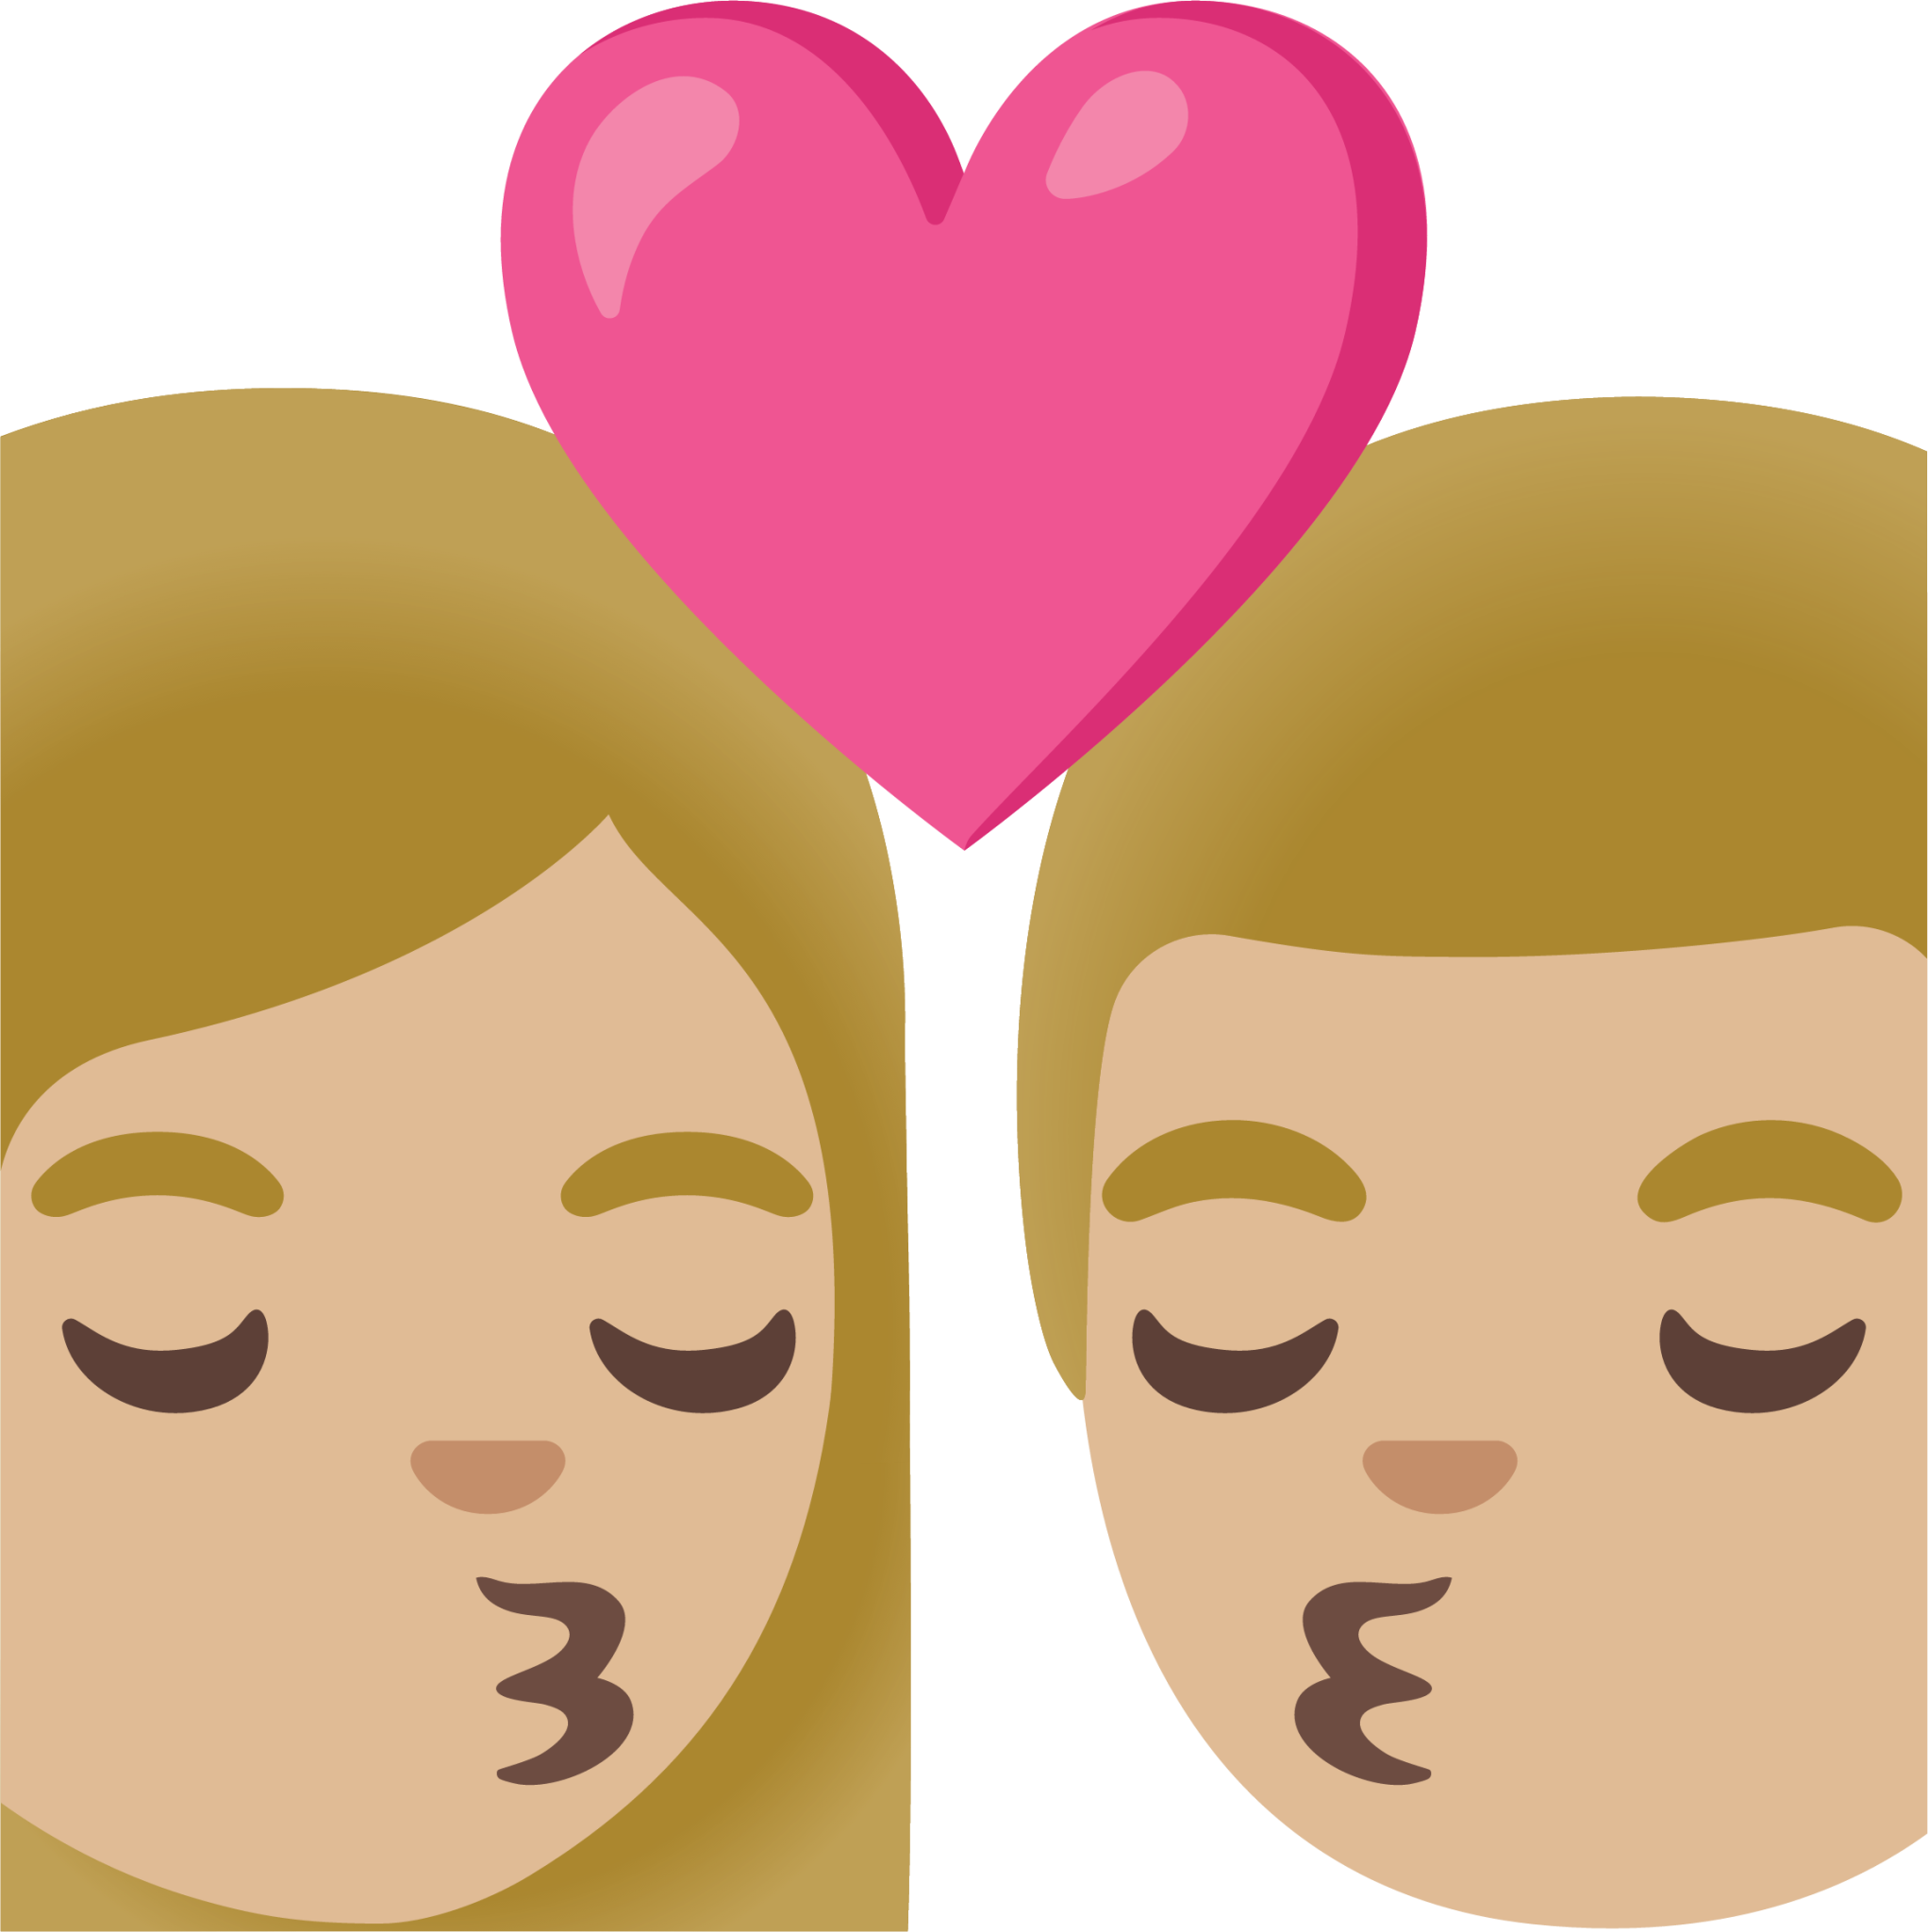 kiss: woman, man, medium-light skin tone emoji